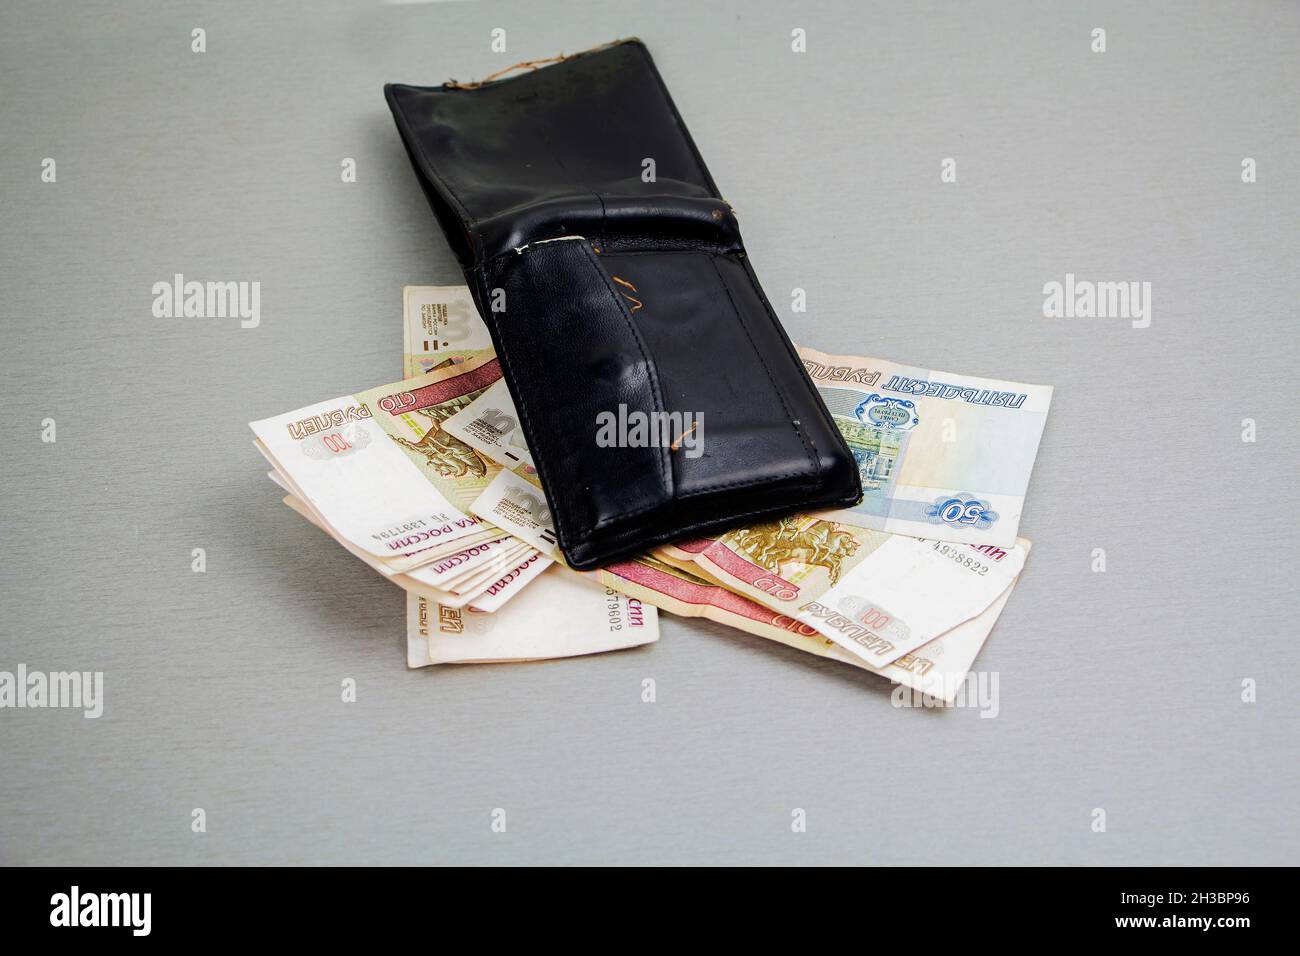 Portefeuille rétro-noir et billets de 1000 et 100 roubles qui en sortent.Les affaires et la finance, le concept de la richesse.Crise. Banque D'Images